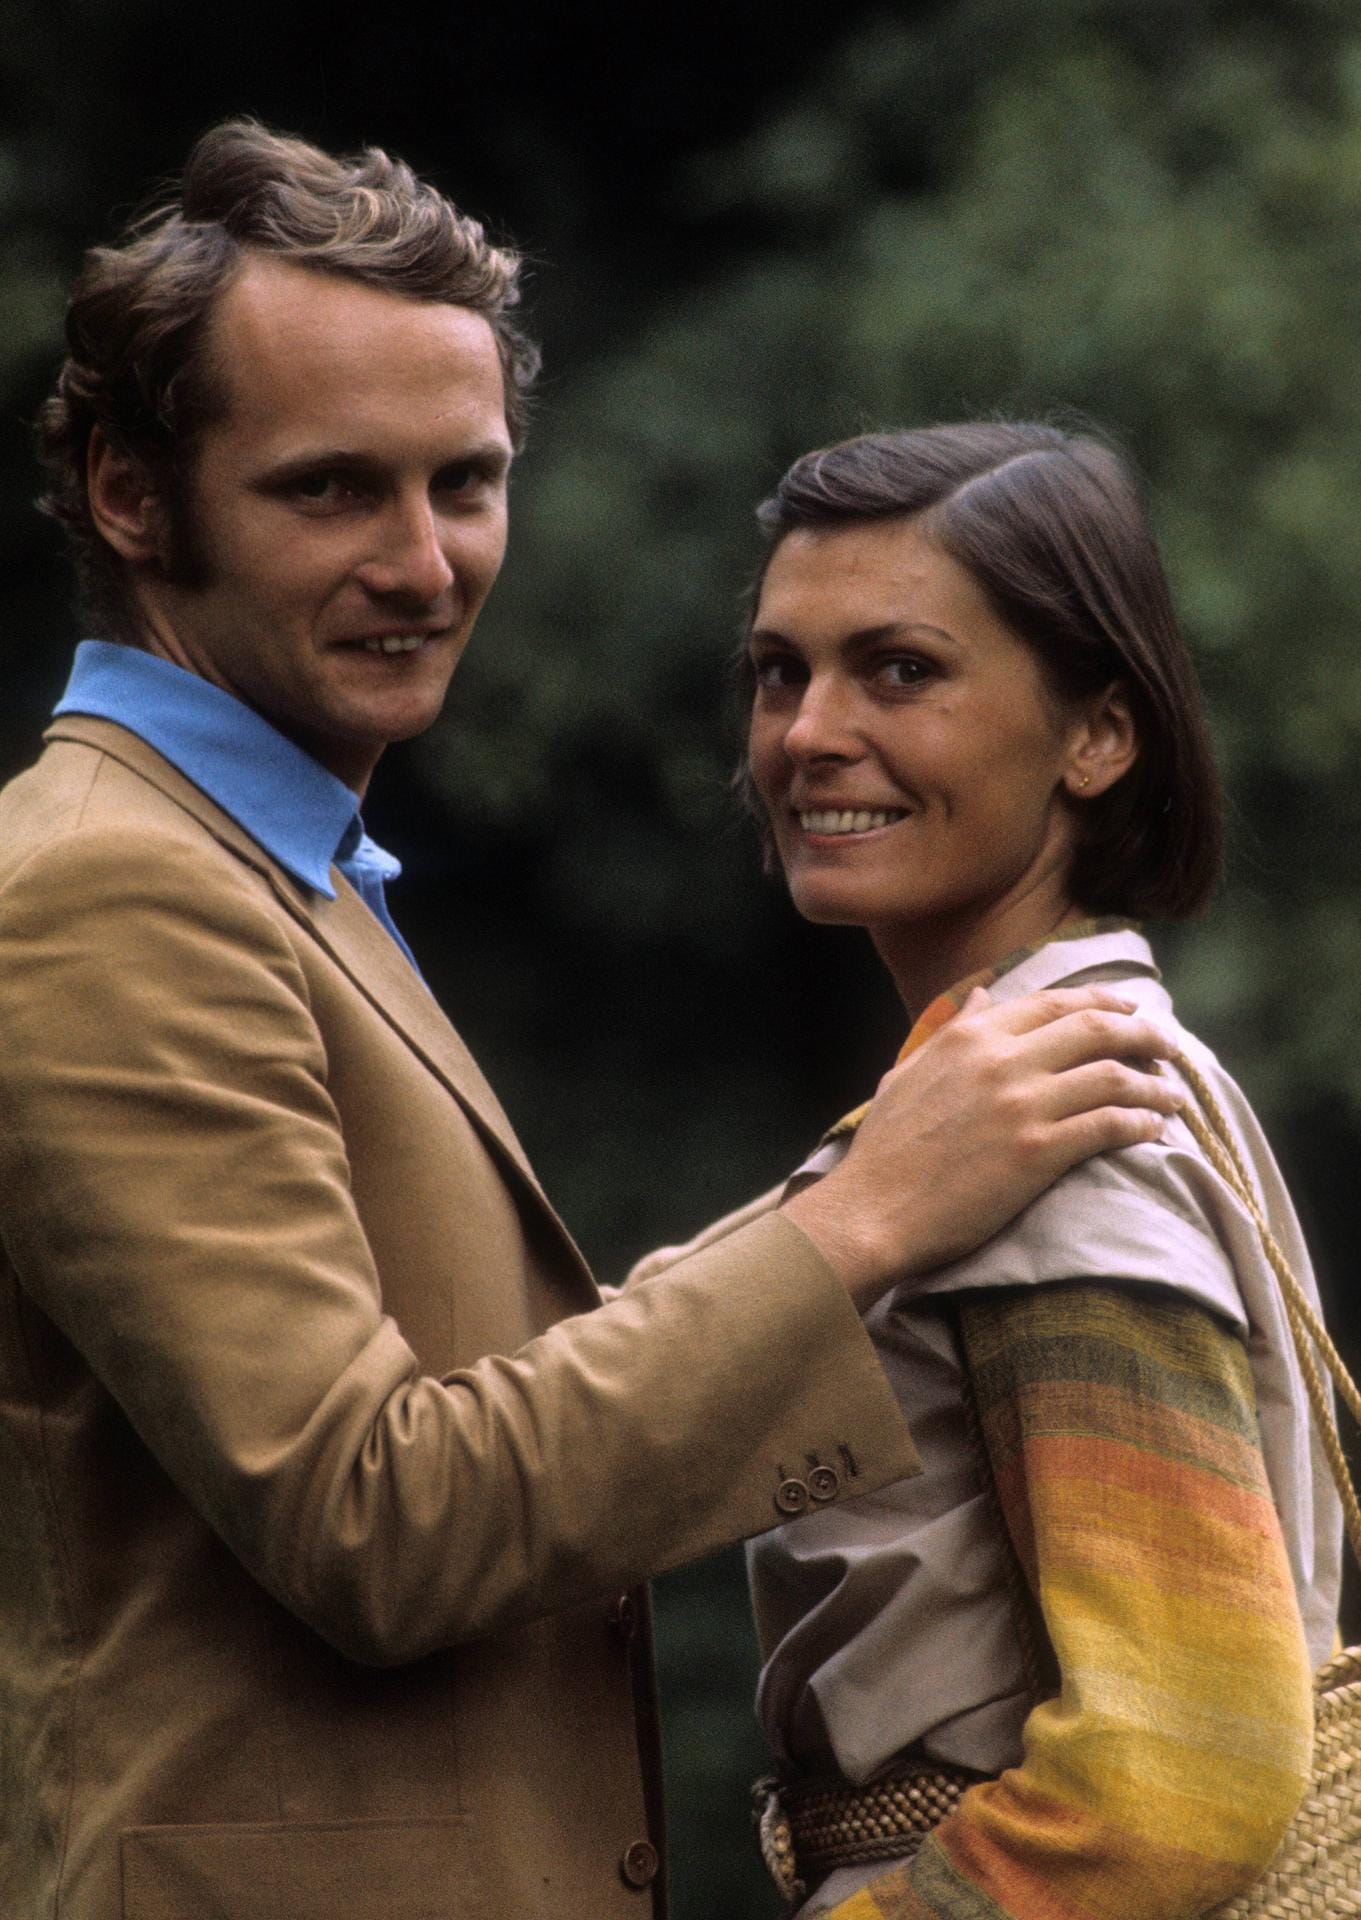 Niki Lauda mit seiner damaligen Freundin Mariella von Reininghaus: Die beiden waren jahrelang verlobt, zu einer Hochzeit ist es aber nicht gekommen. Hier sind die beiden im Jahr 1973 zu sehen.